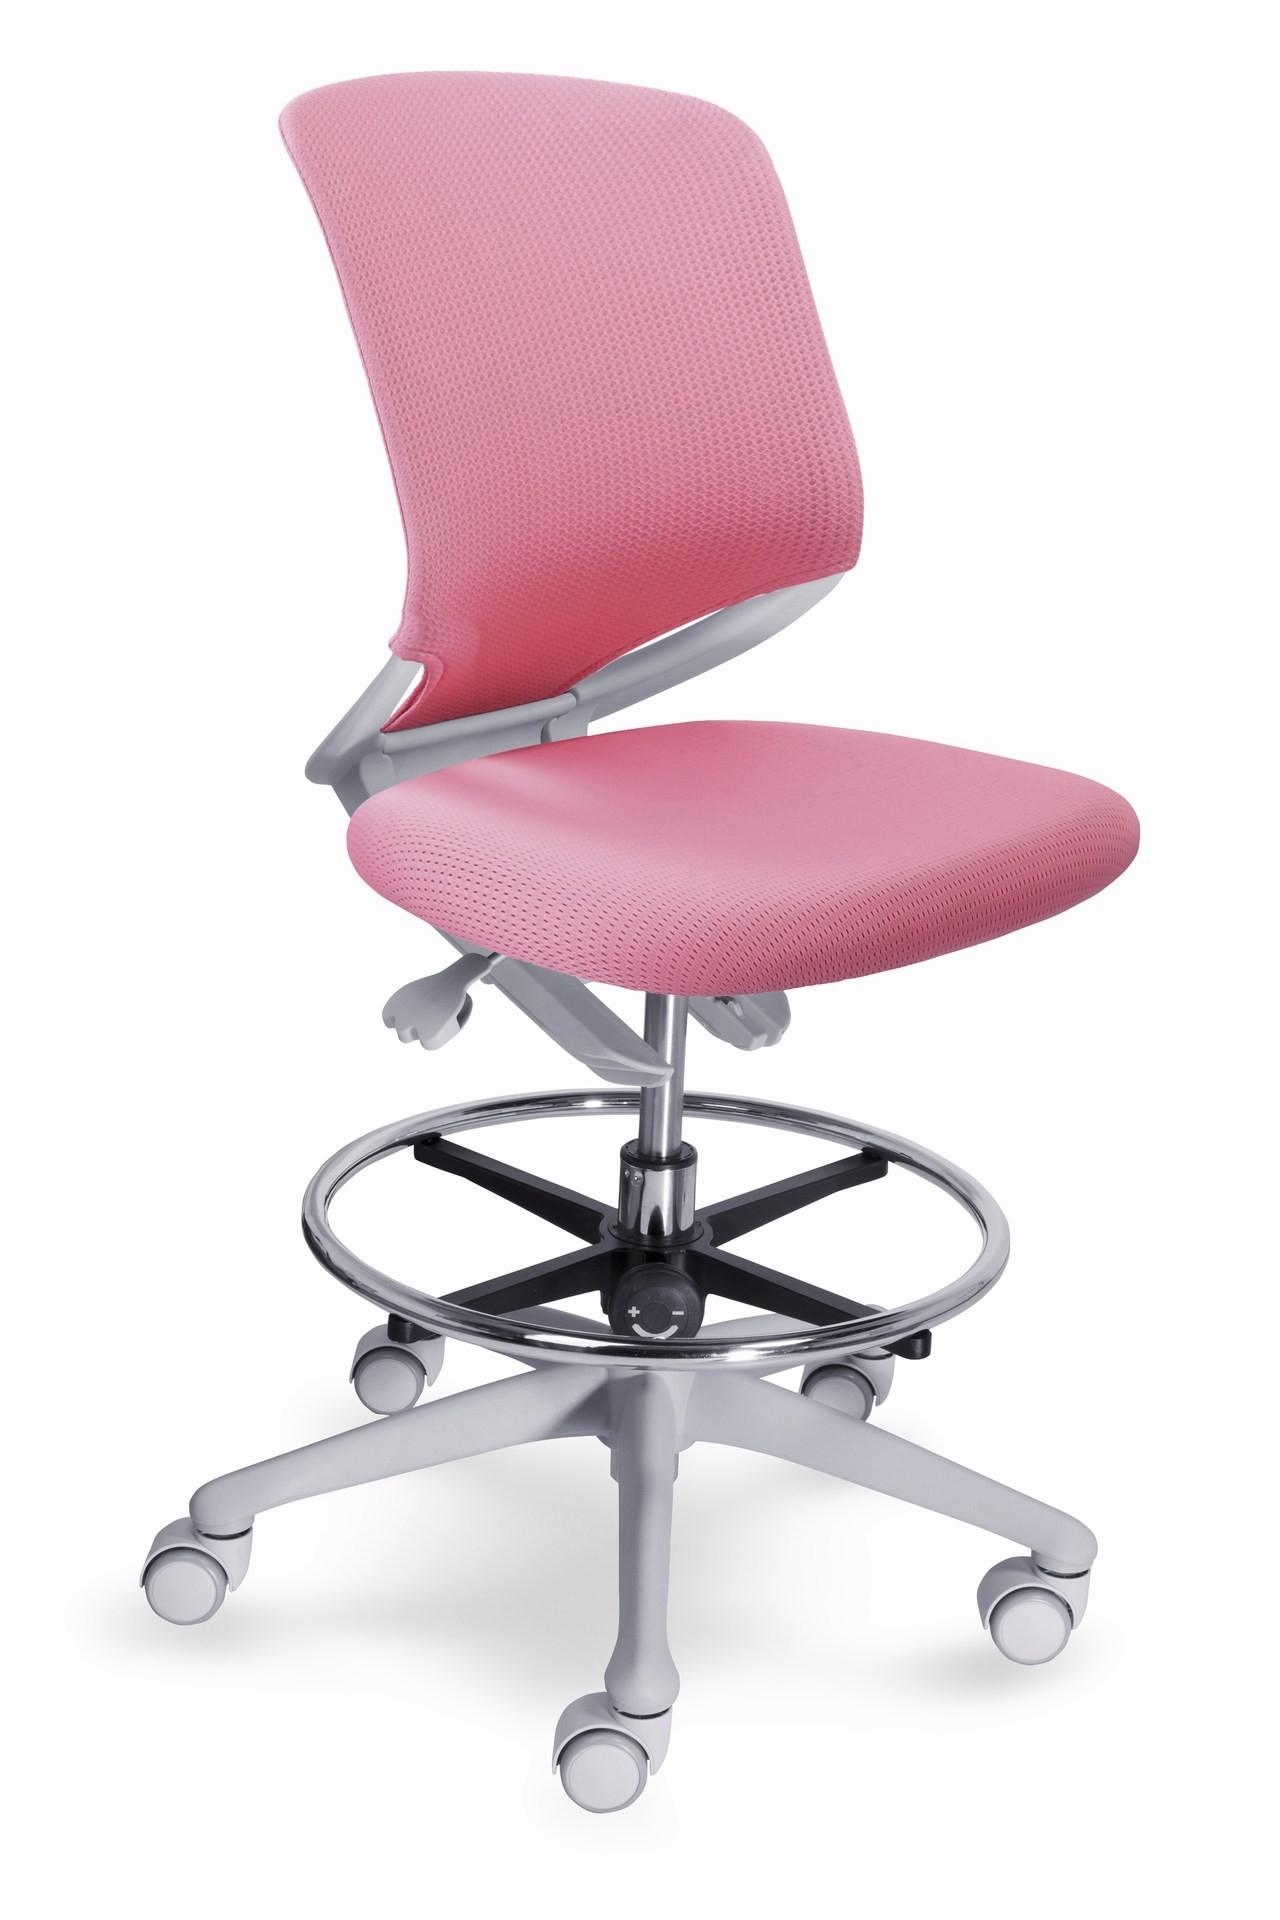 Vyšší píst pro židli Smarty - výška sezení 42 - 54 cm s kruhovou oporou - Výměna za standardní komponent